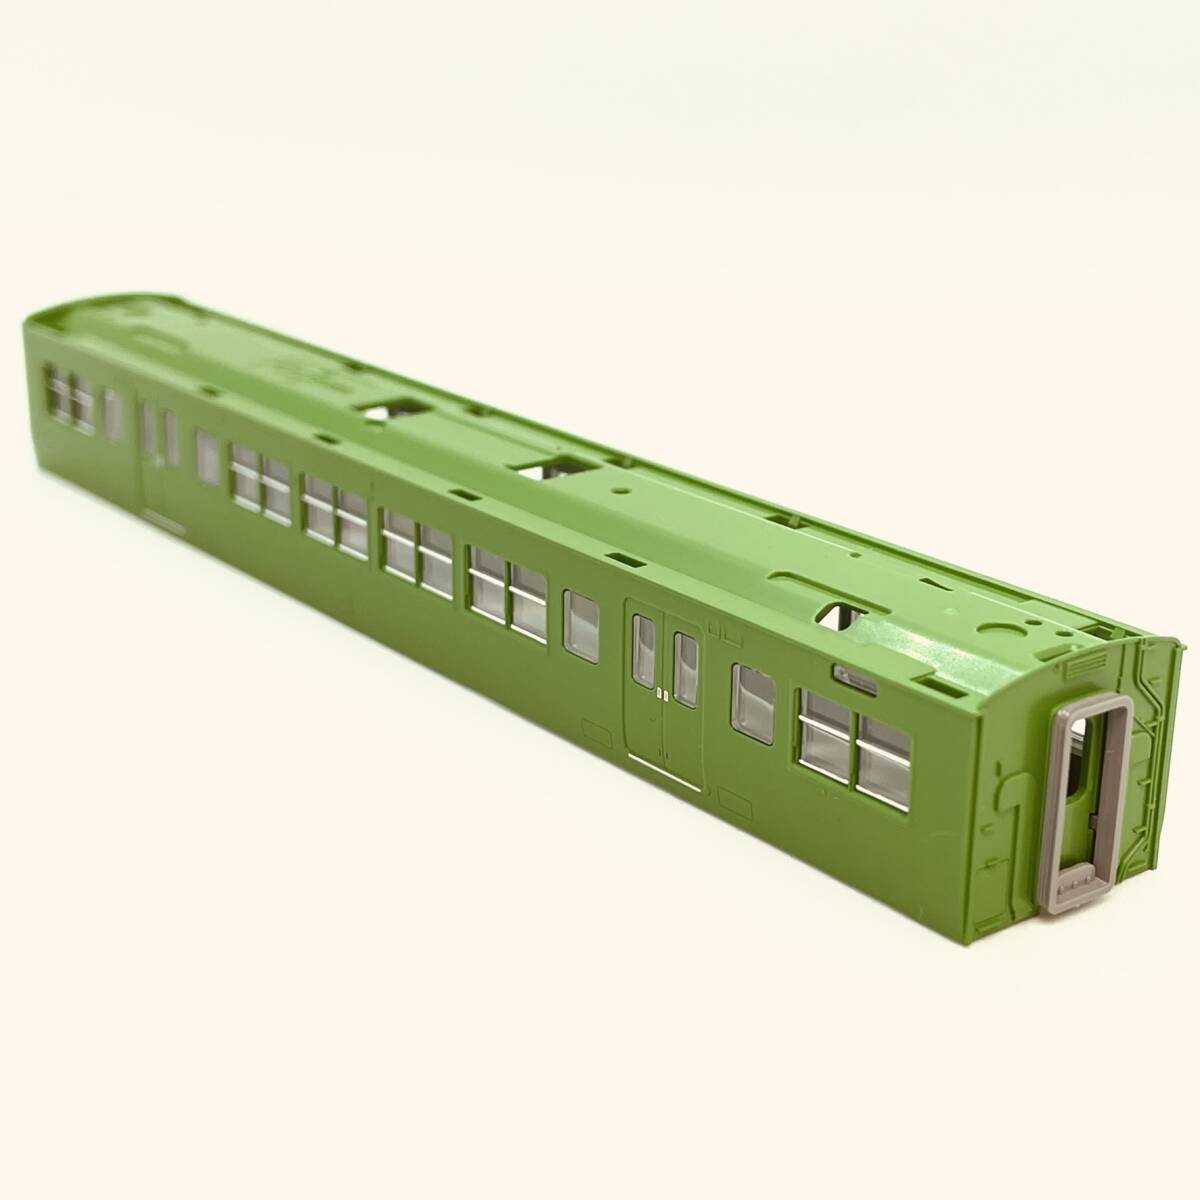 TOMIX モハ117-300 ボディ+ガラス 1両分入り 98782 JR 117-300系近郊電車(緑色)セットからのバラシ_別の角度からの画像です。